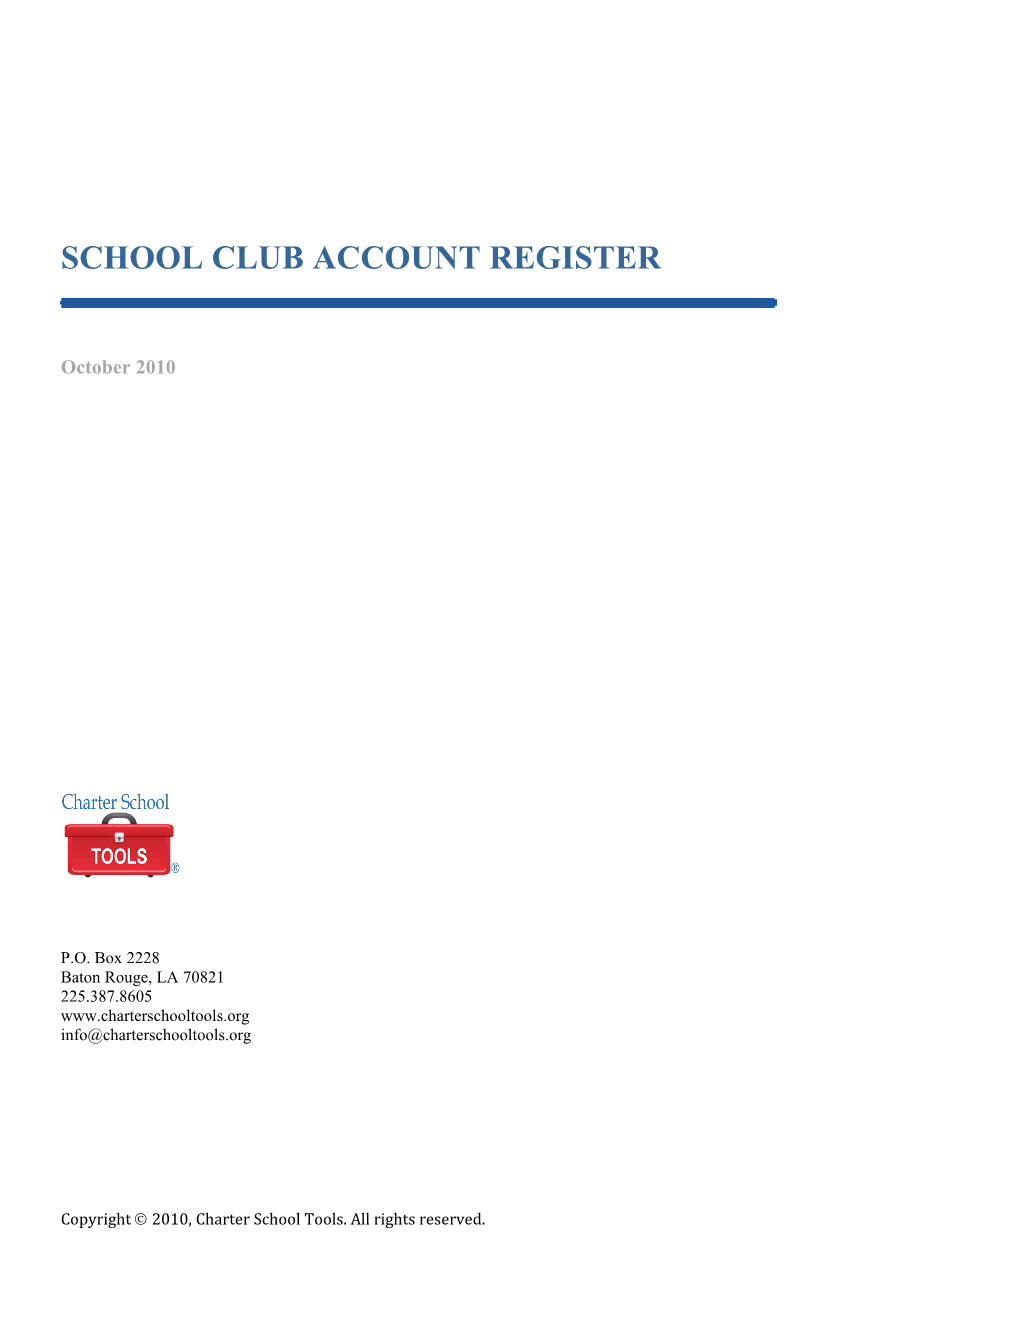 School Club Account Register